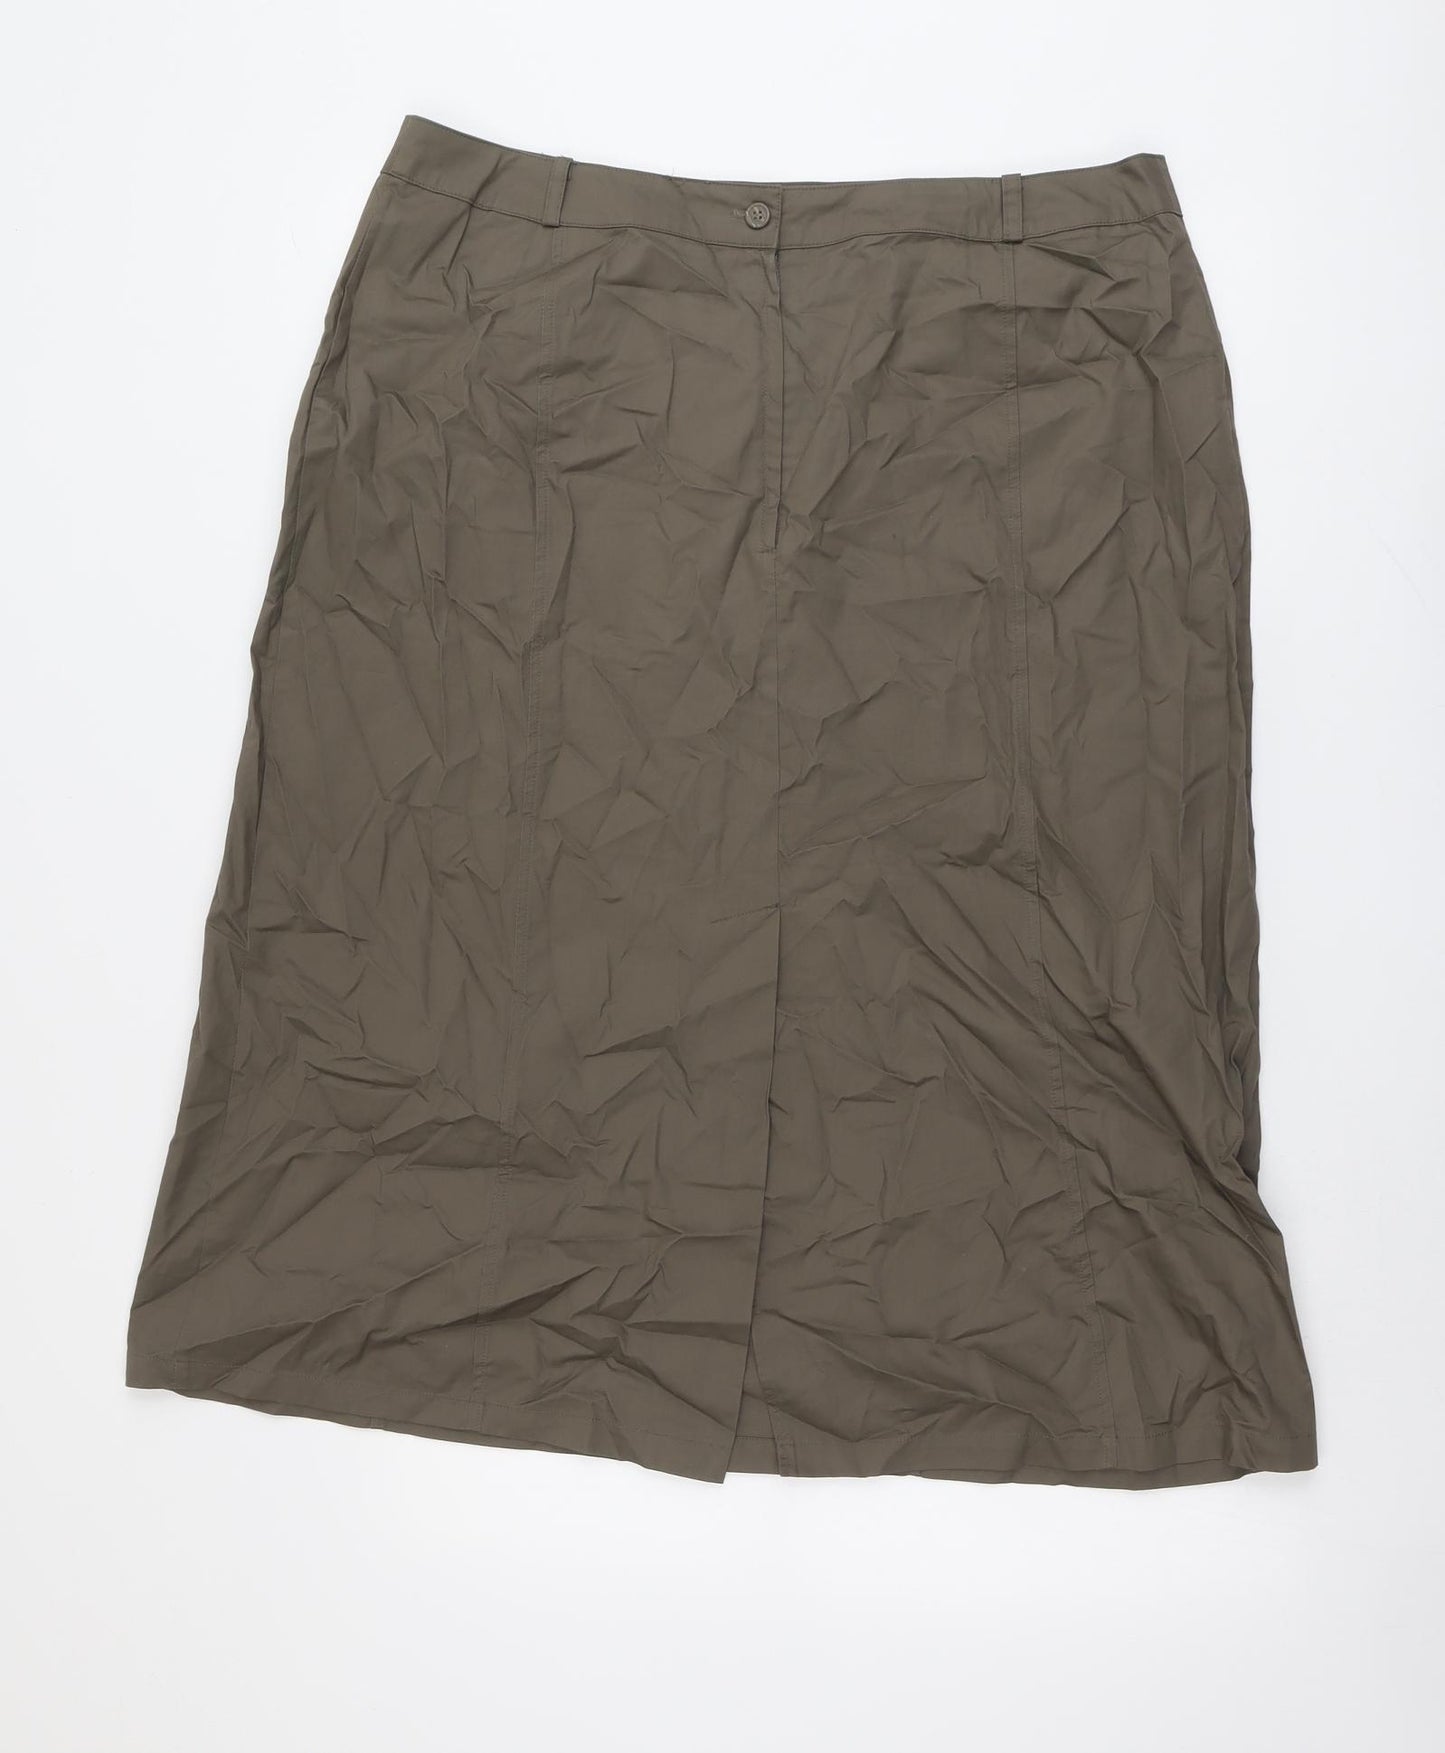 Klass Womens Green Cotton A-Line Skirt Size 18 Button